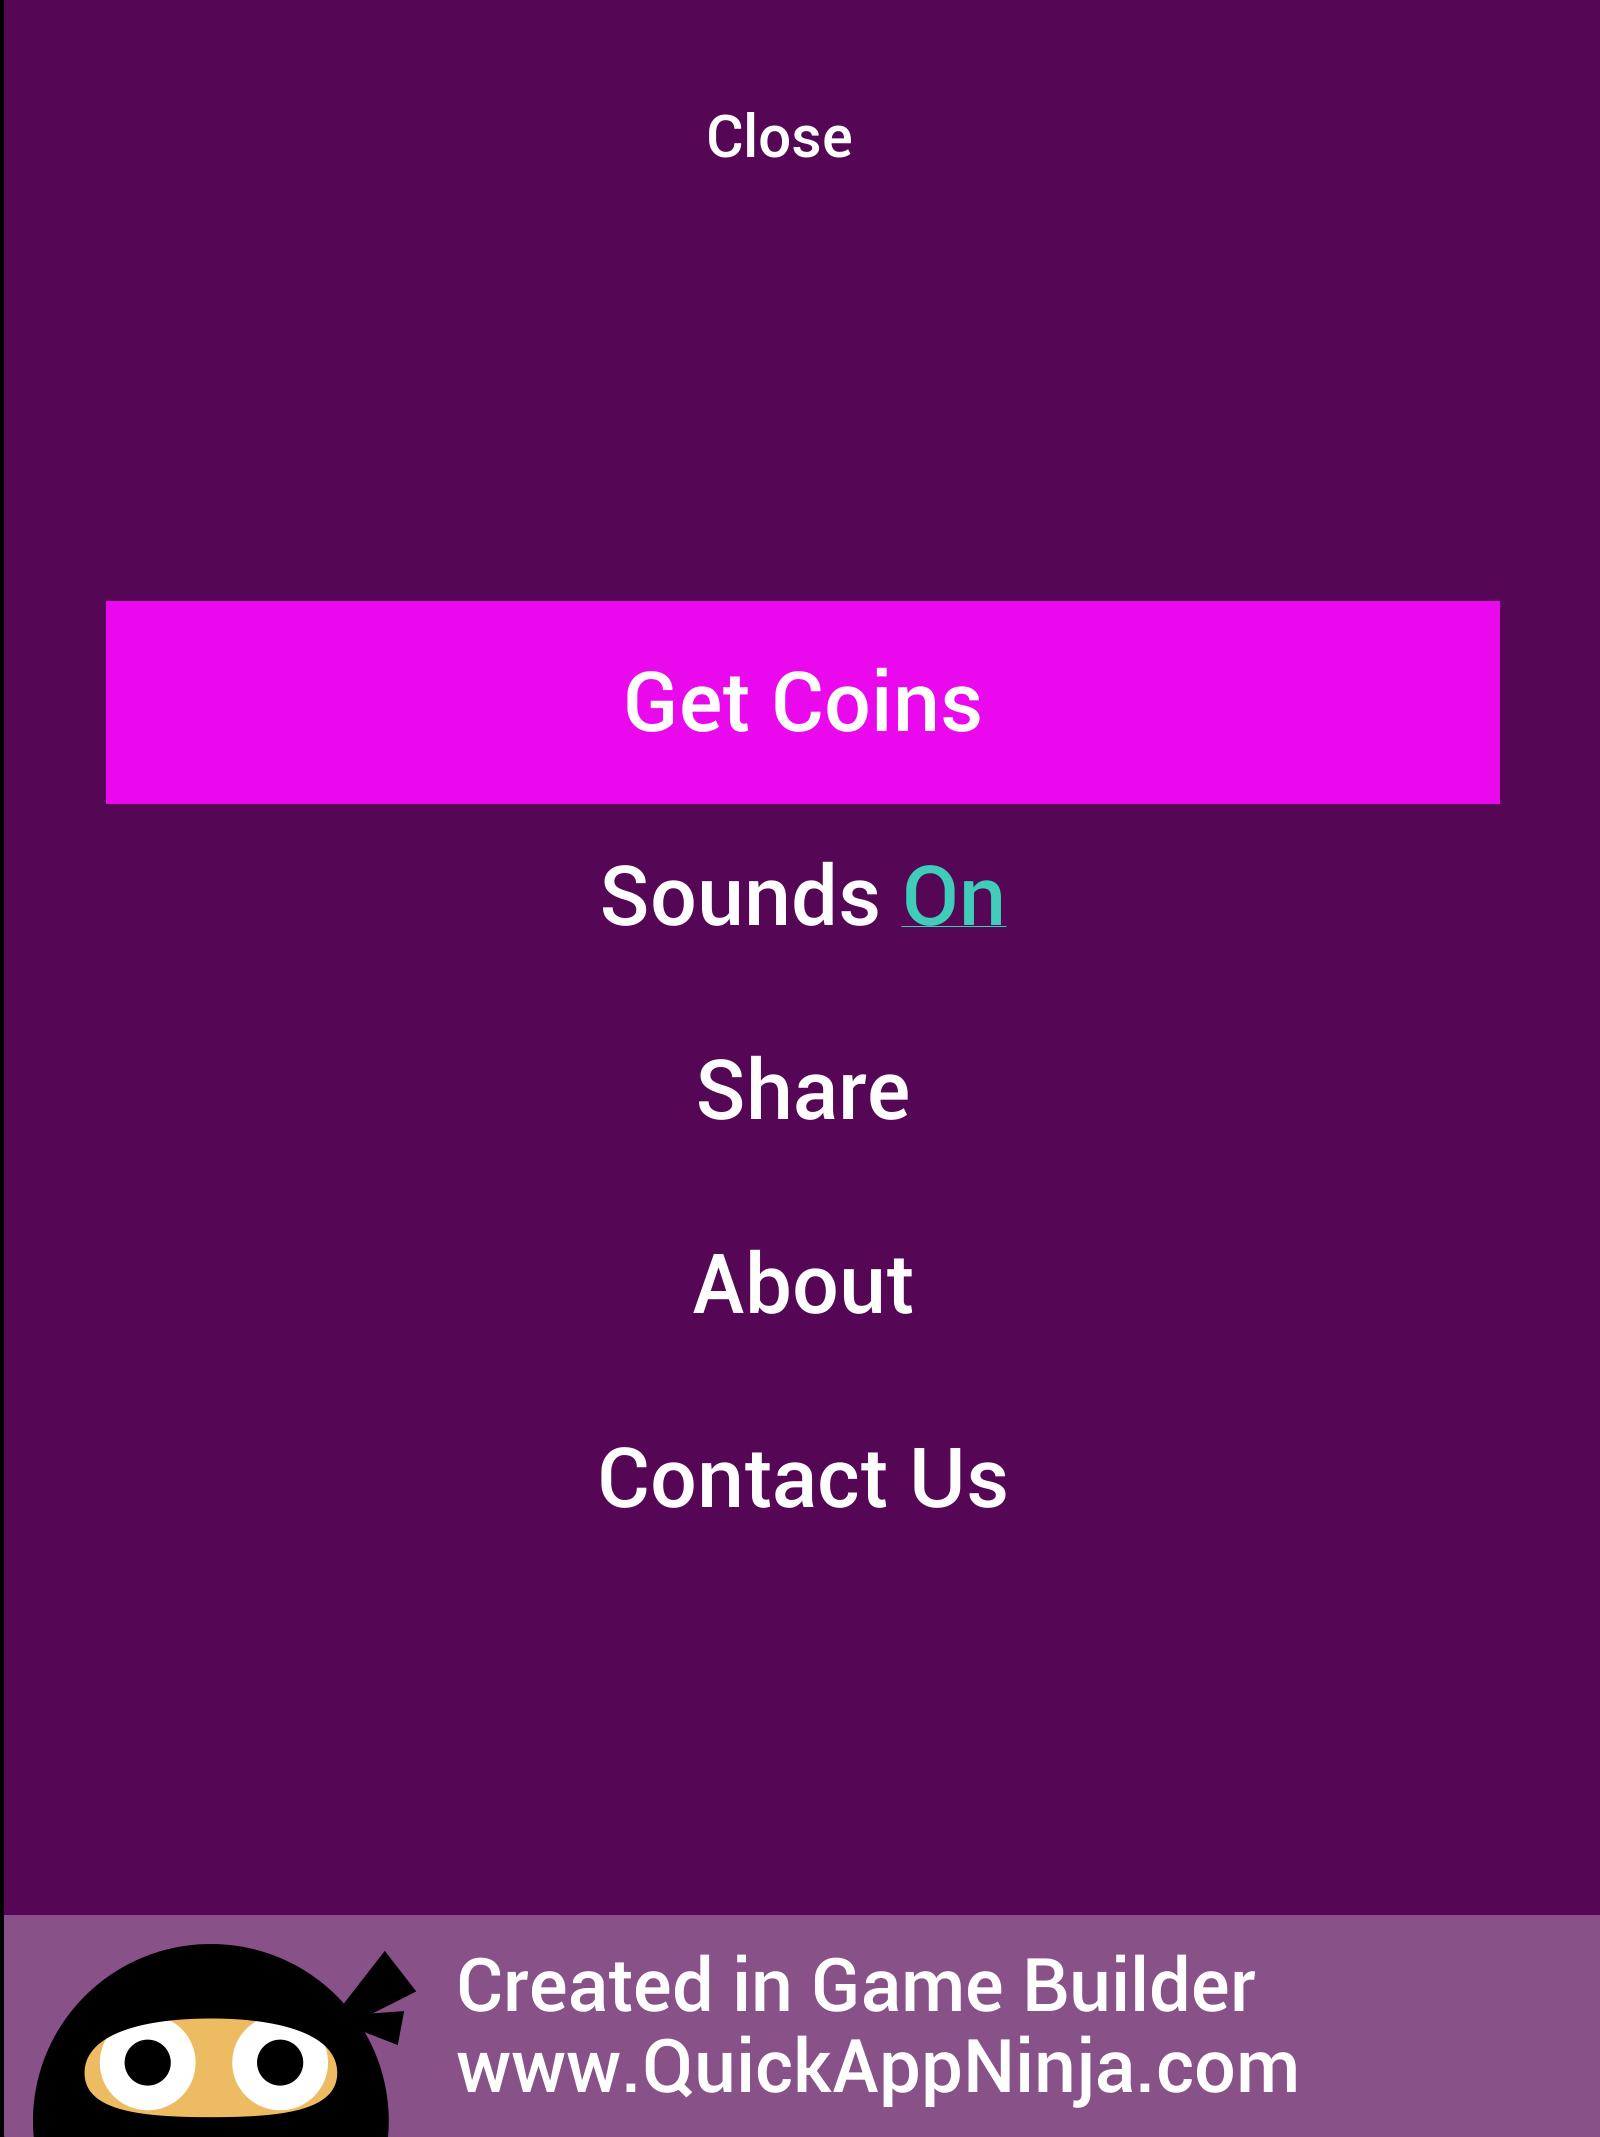 Play Quiz screenshot. Share sounds